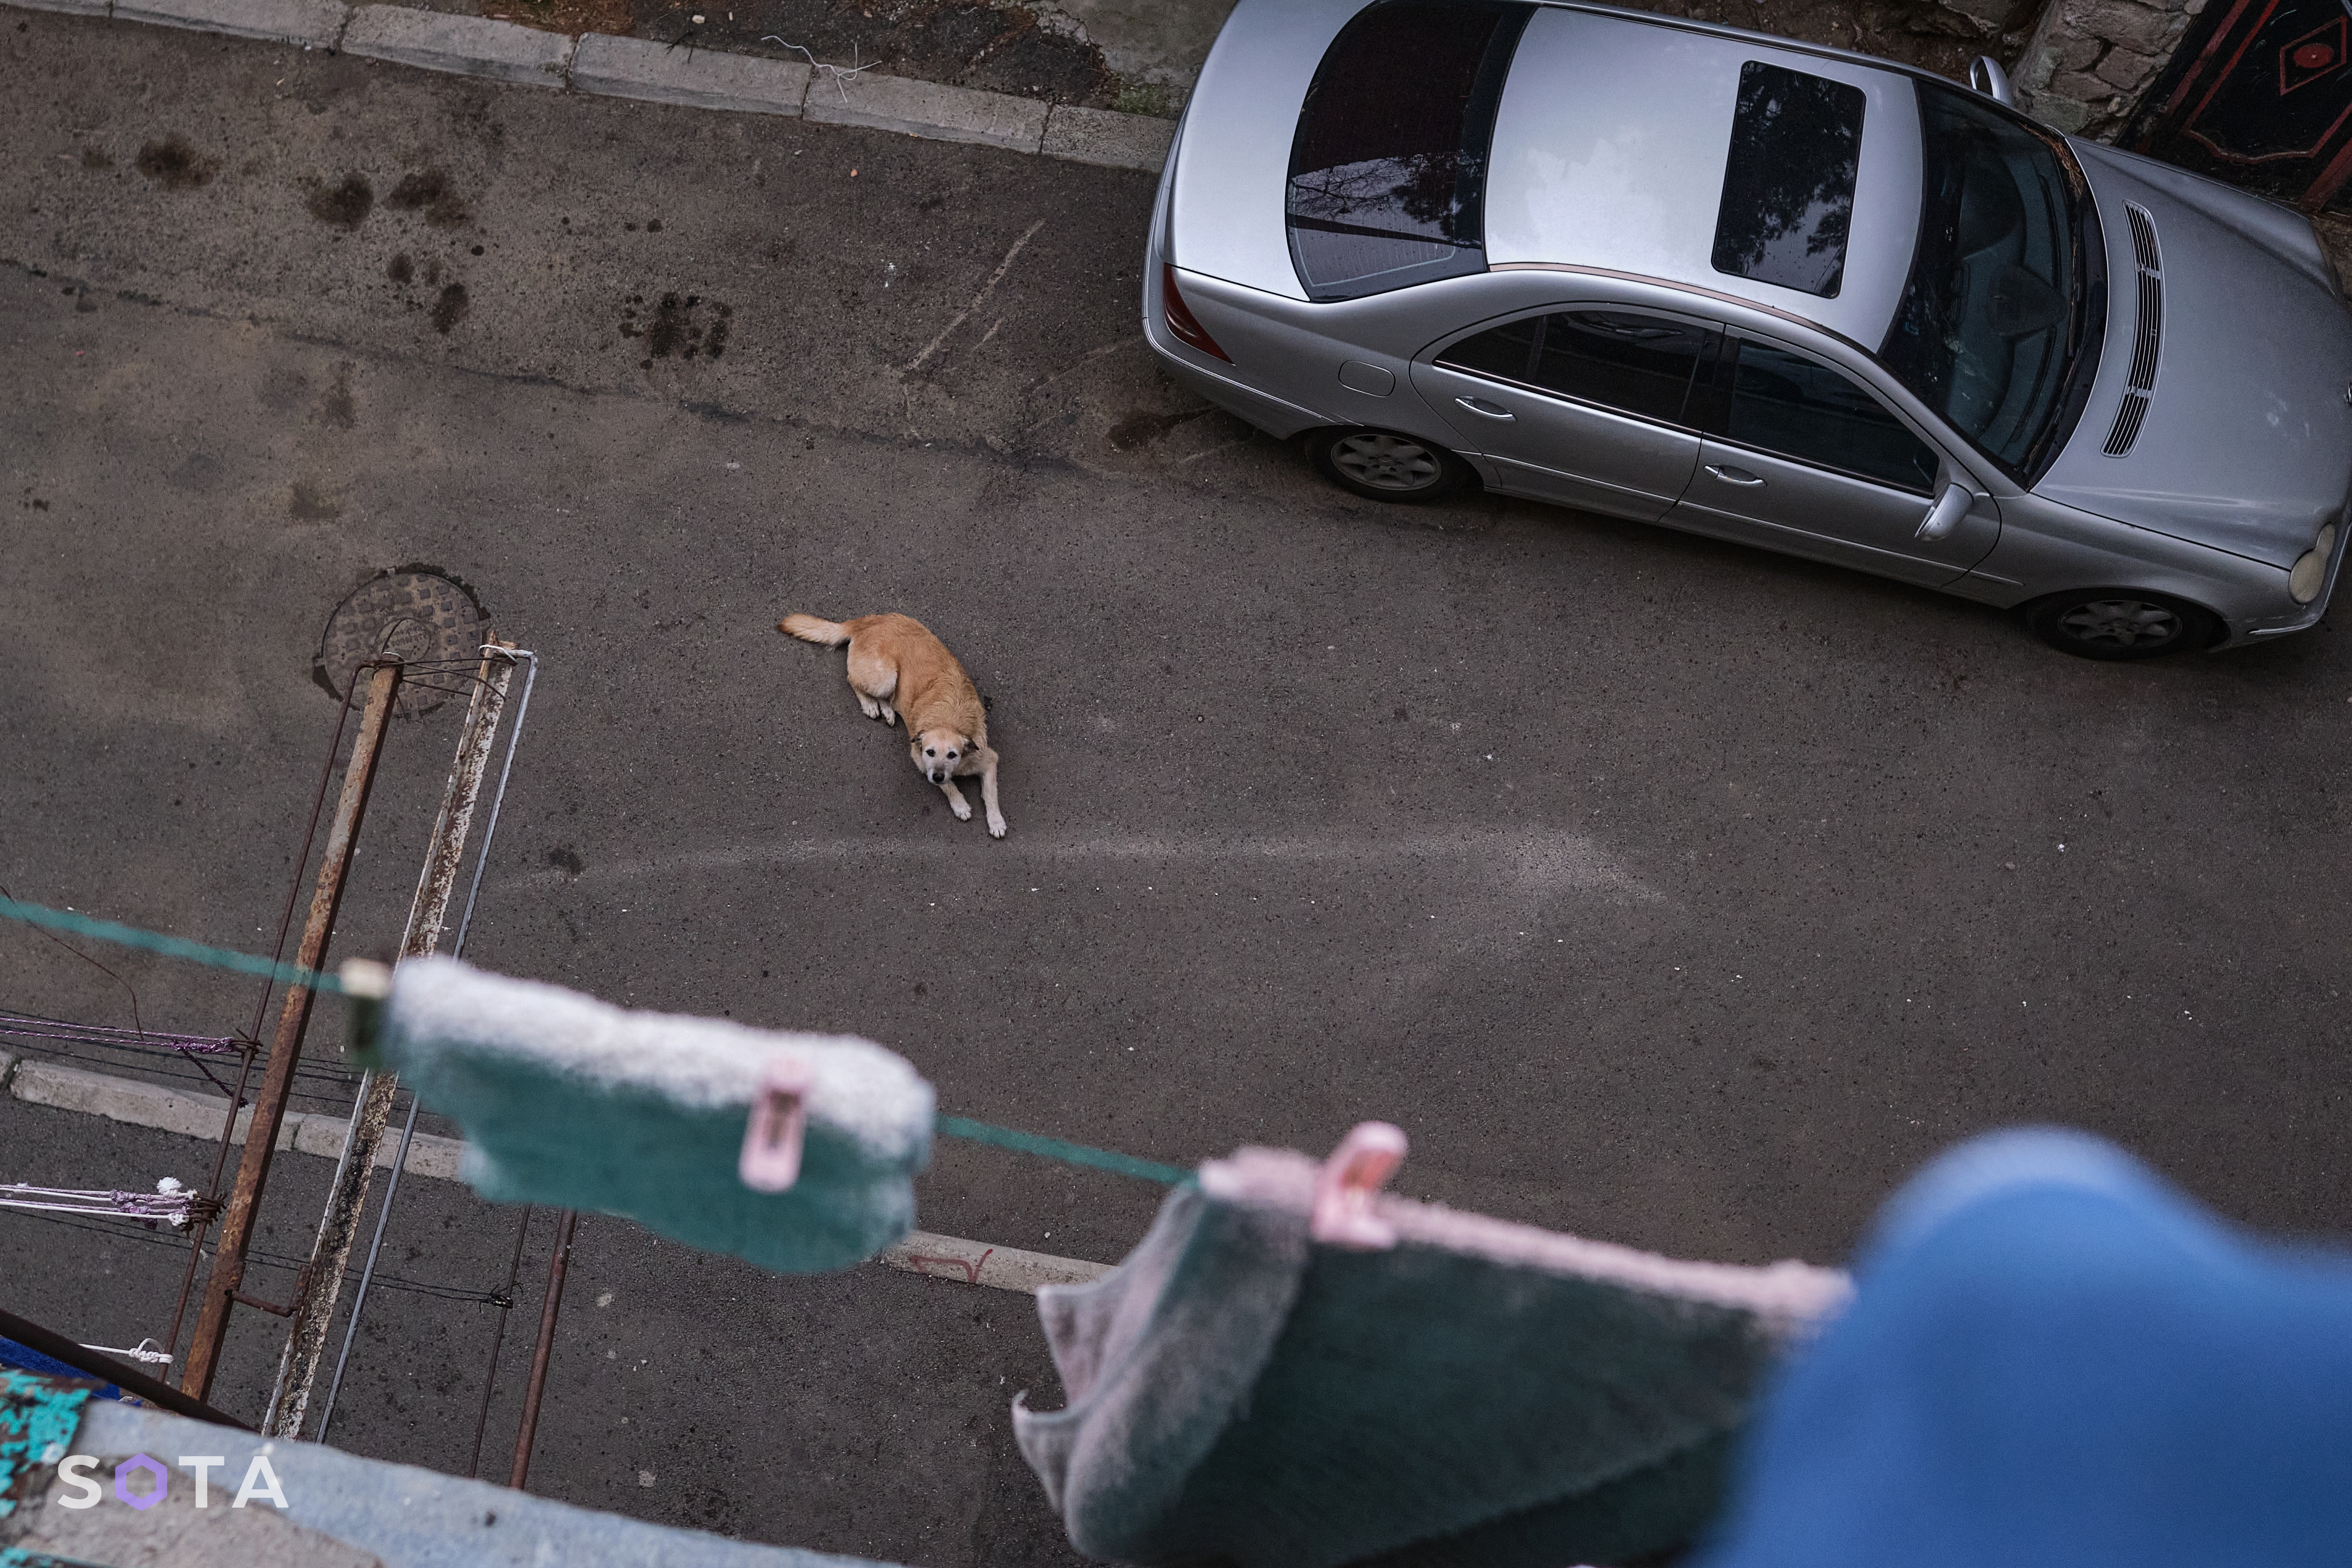 Уличная собака под окнами котоквартиры в Варкетили.
Денис Галицын / SOTA